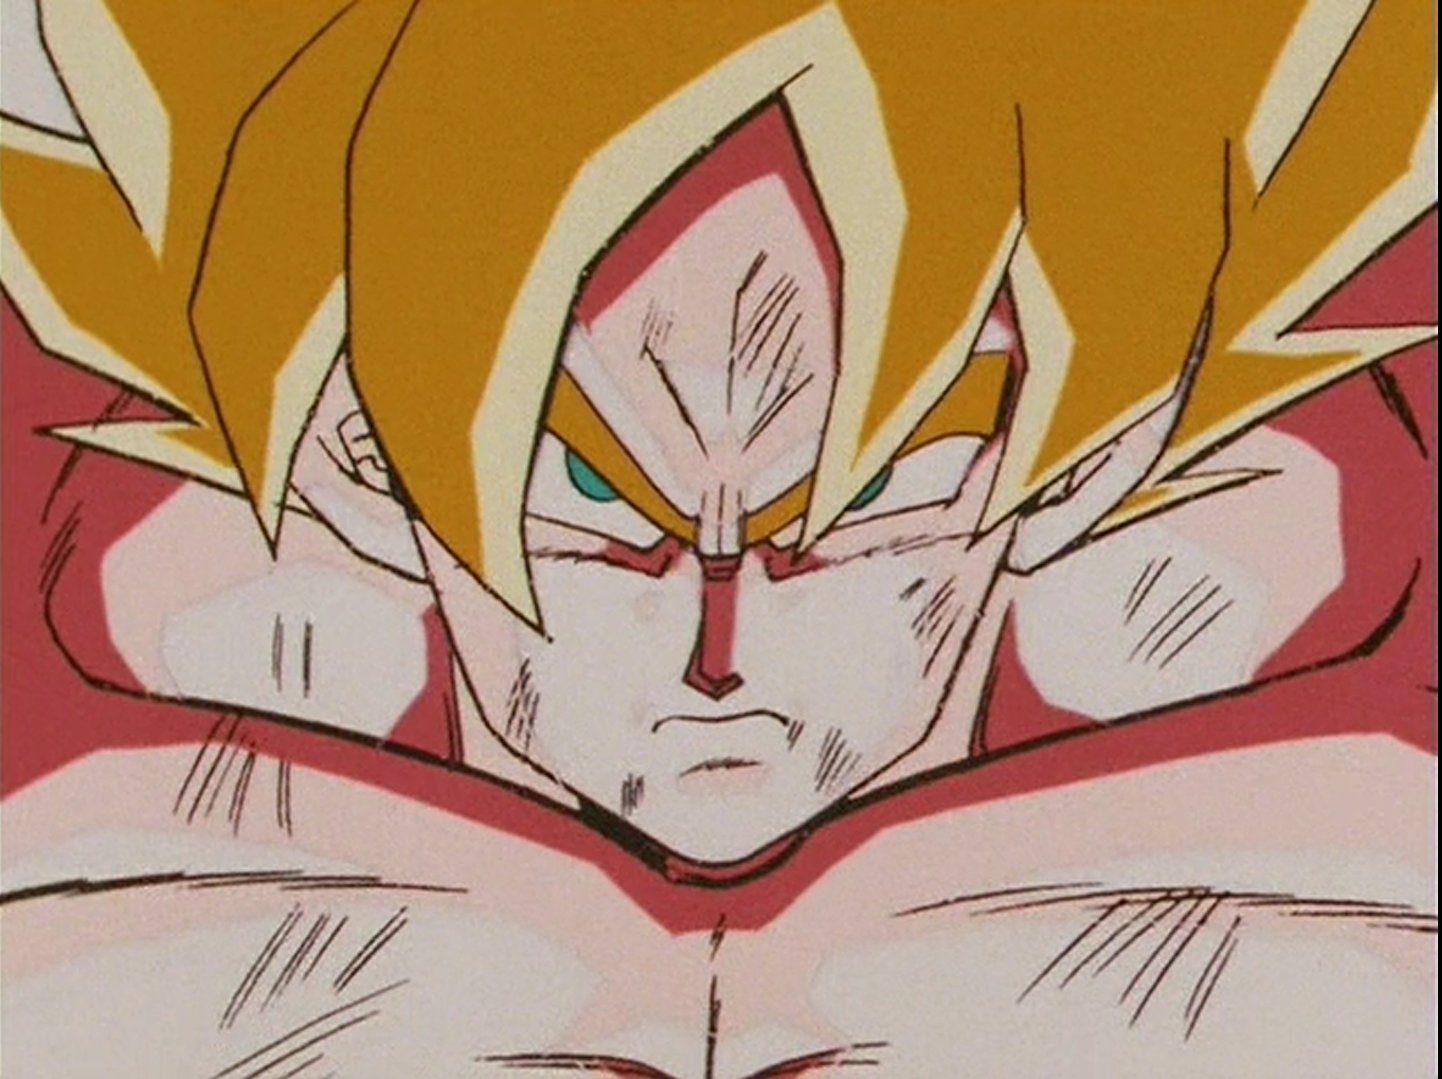 Daiko O Saiyajin on X: Goku Super Saiyajin! Dragon Ball Z 1/2